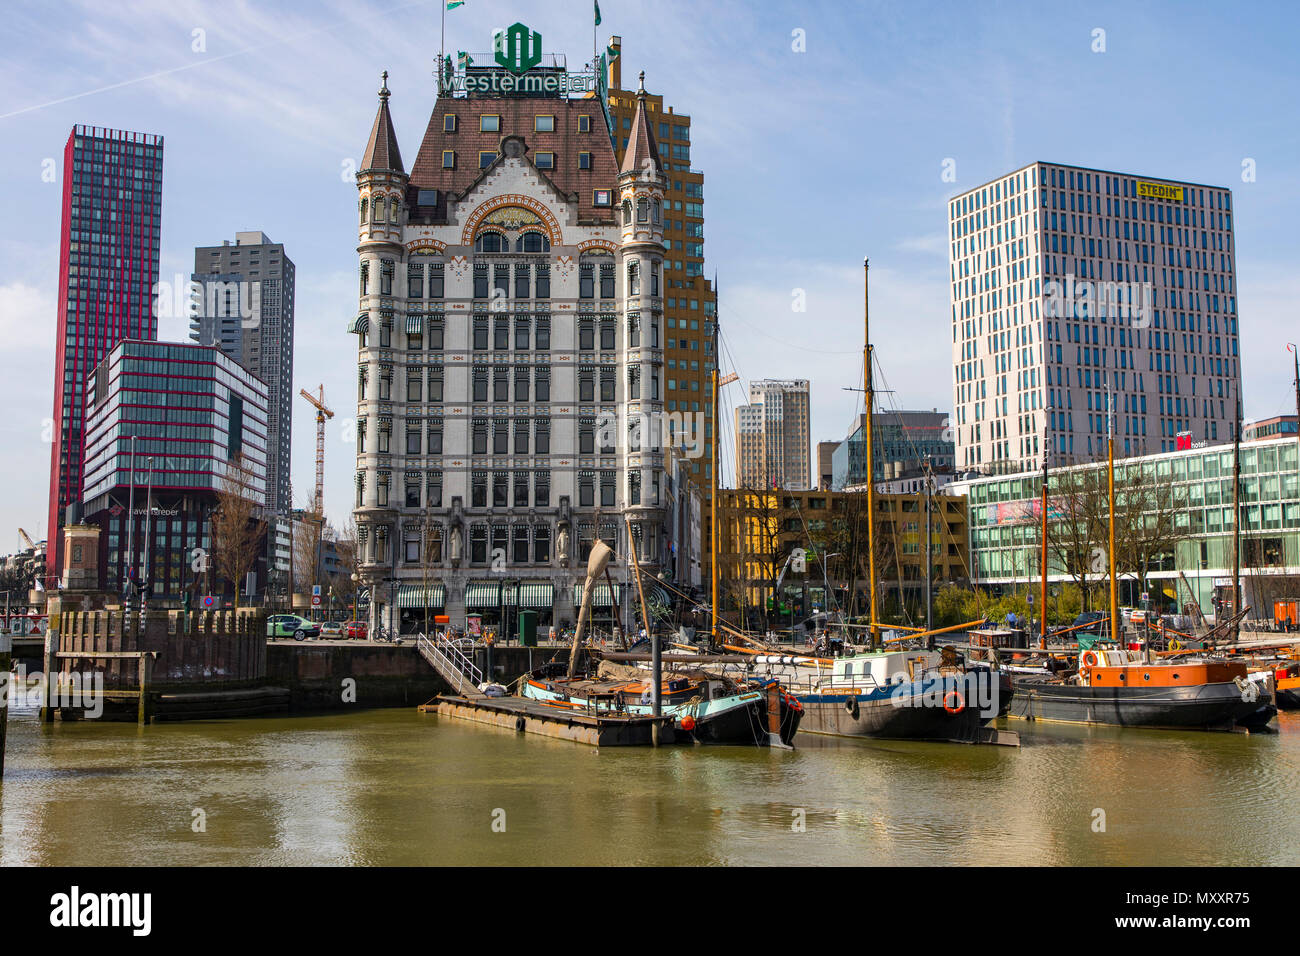 El centro de Rotterdam, Oude Haven, puerto histórico, barcos históricos, Witte Huis, modernos edificios de oficinas, rascacielos, Países Bajos, Foto de stock